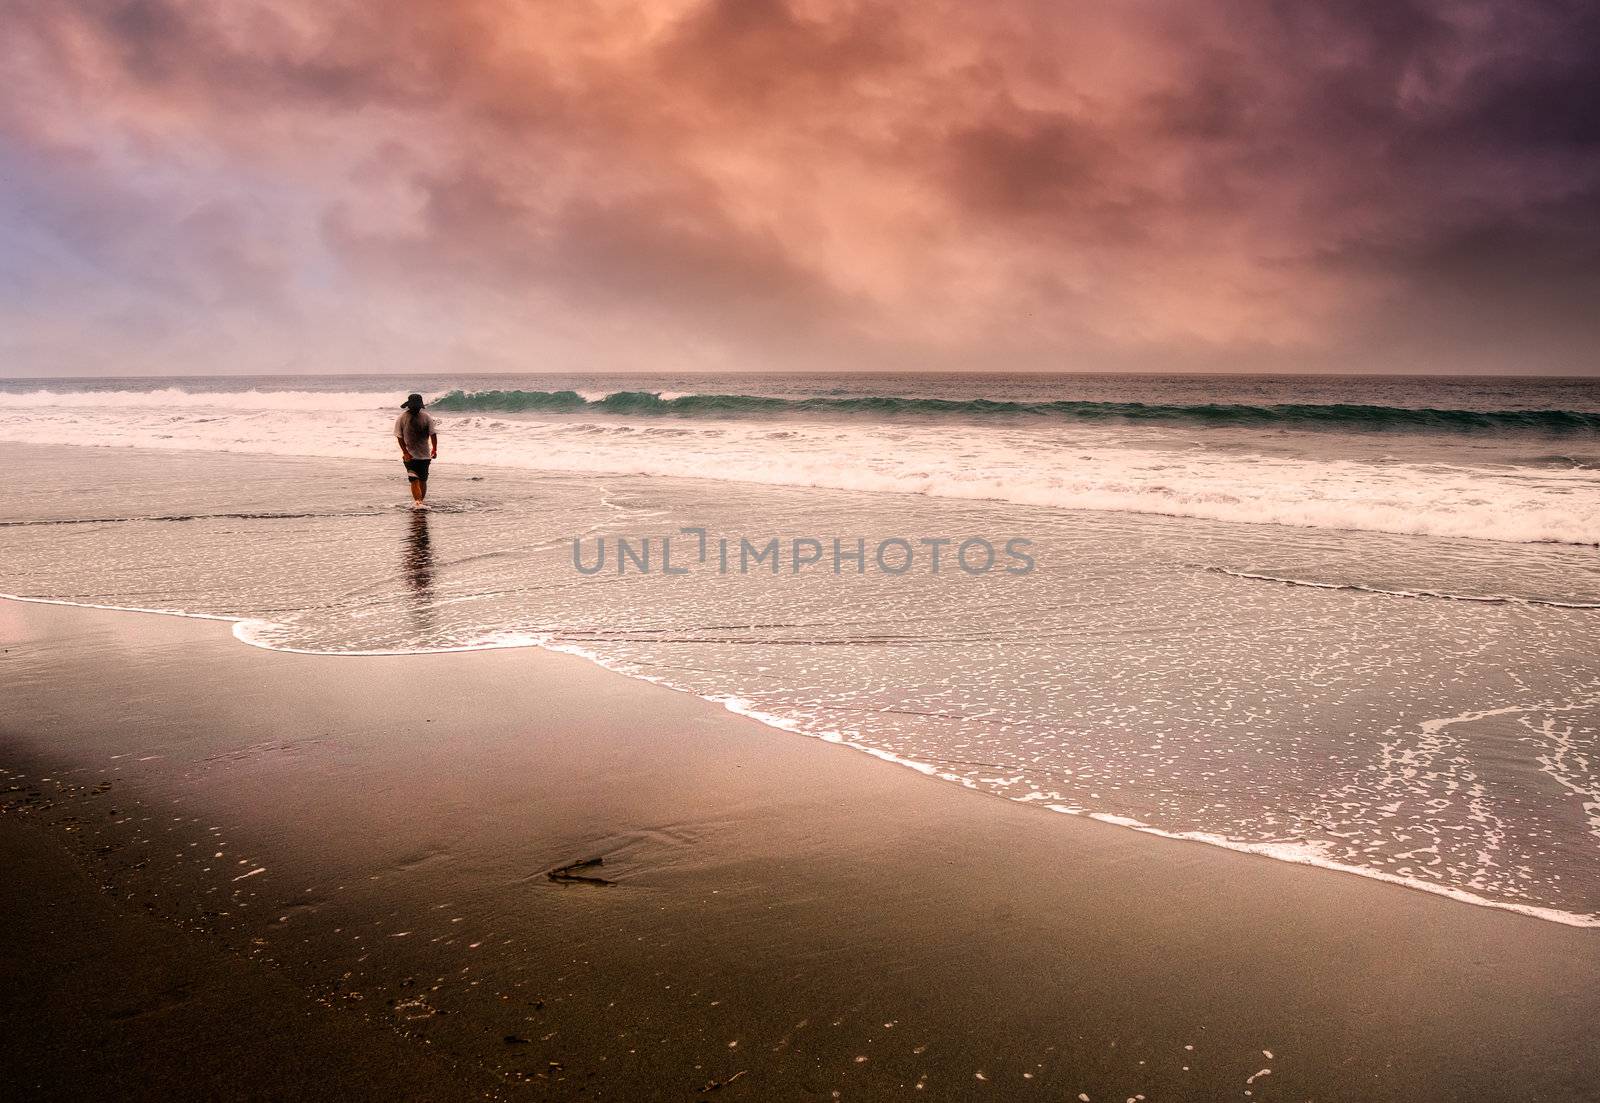 Lonely man walking at beach by elwynn